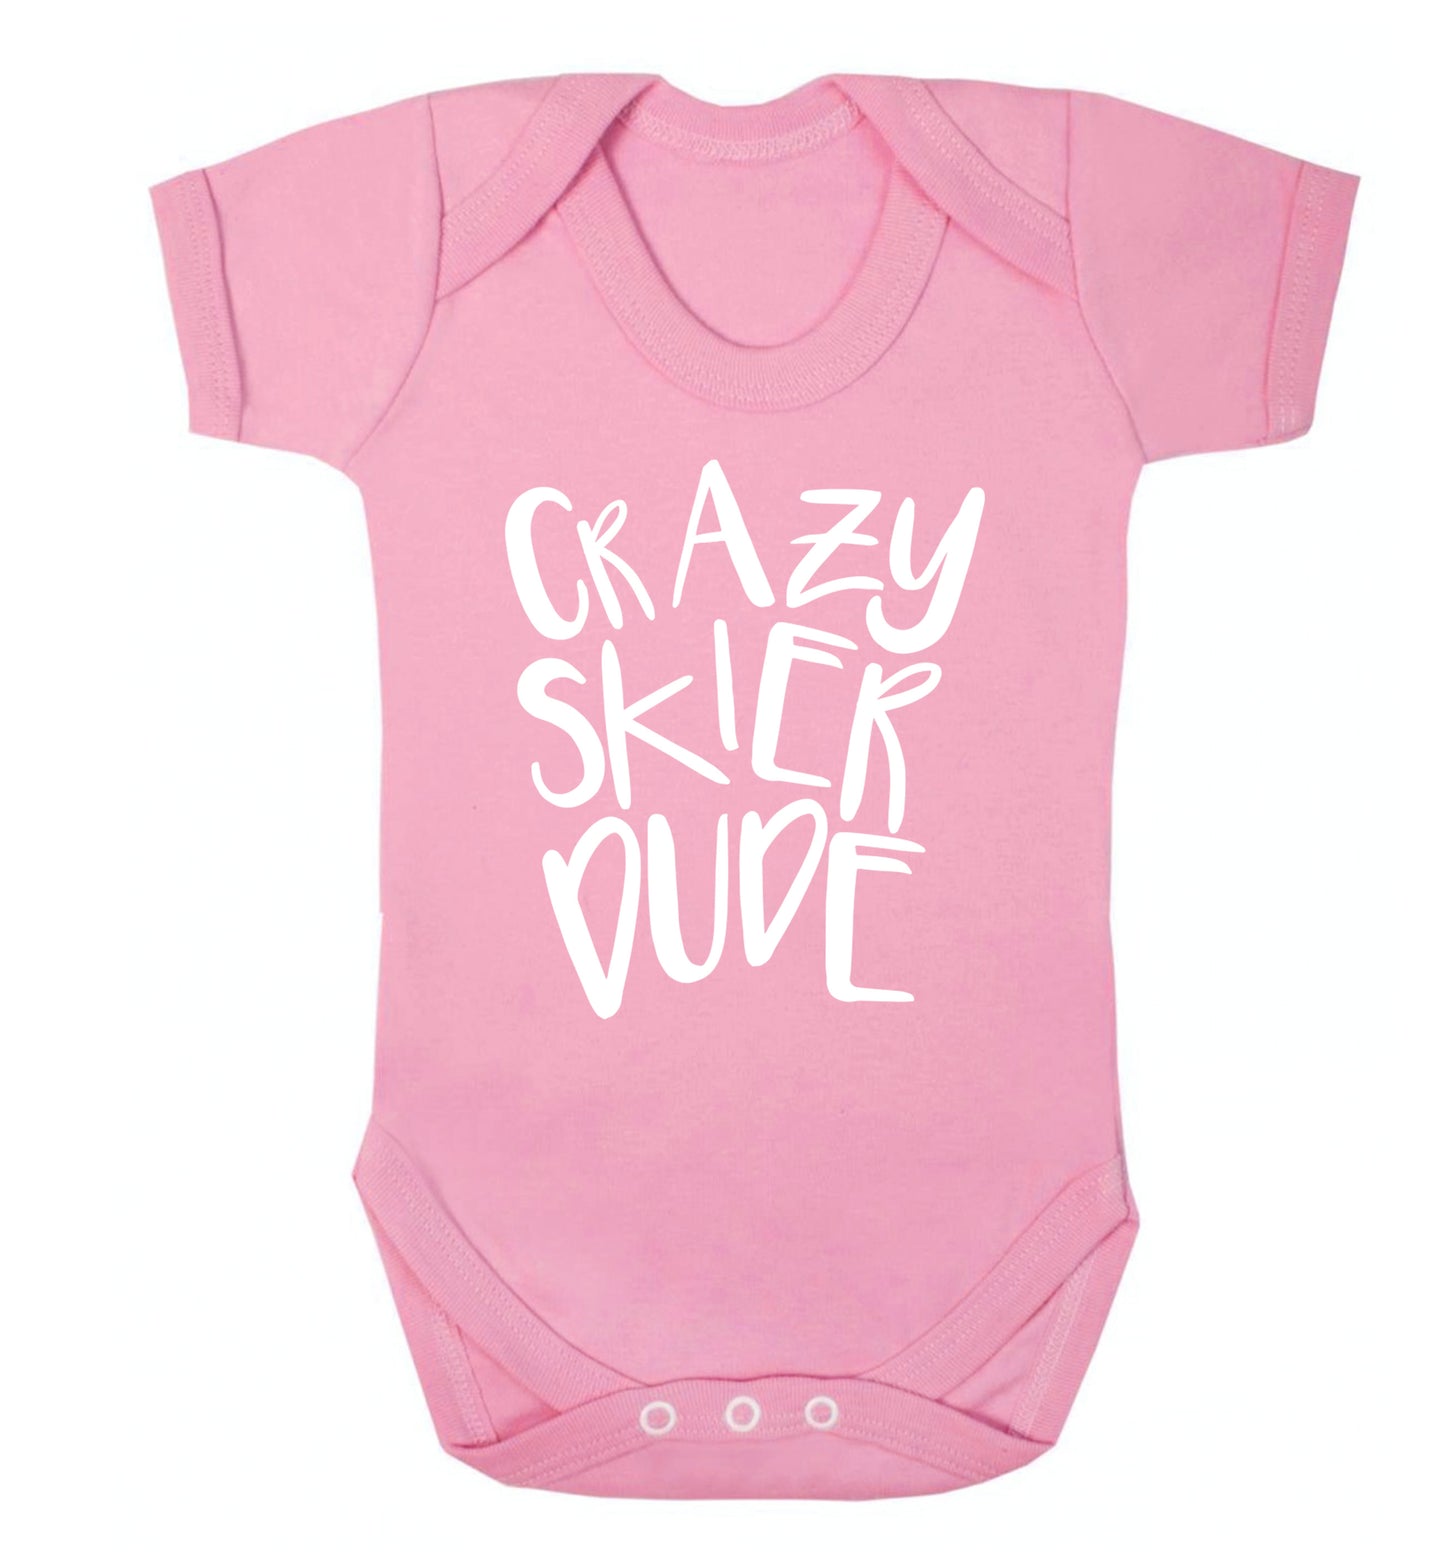 Crazy skier dude Baby Vest pale pink 18-24 months